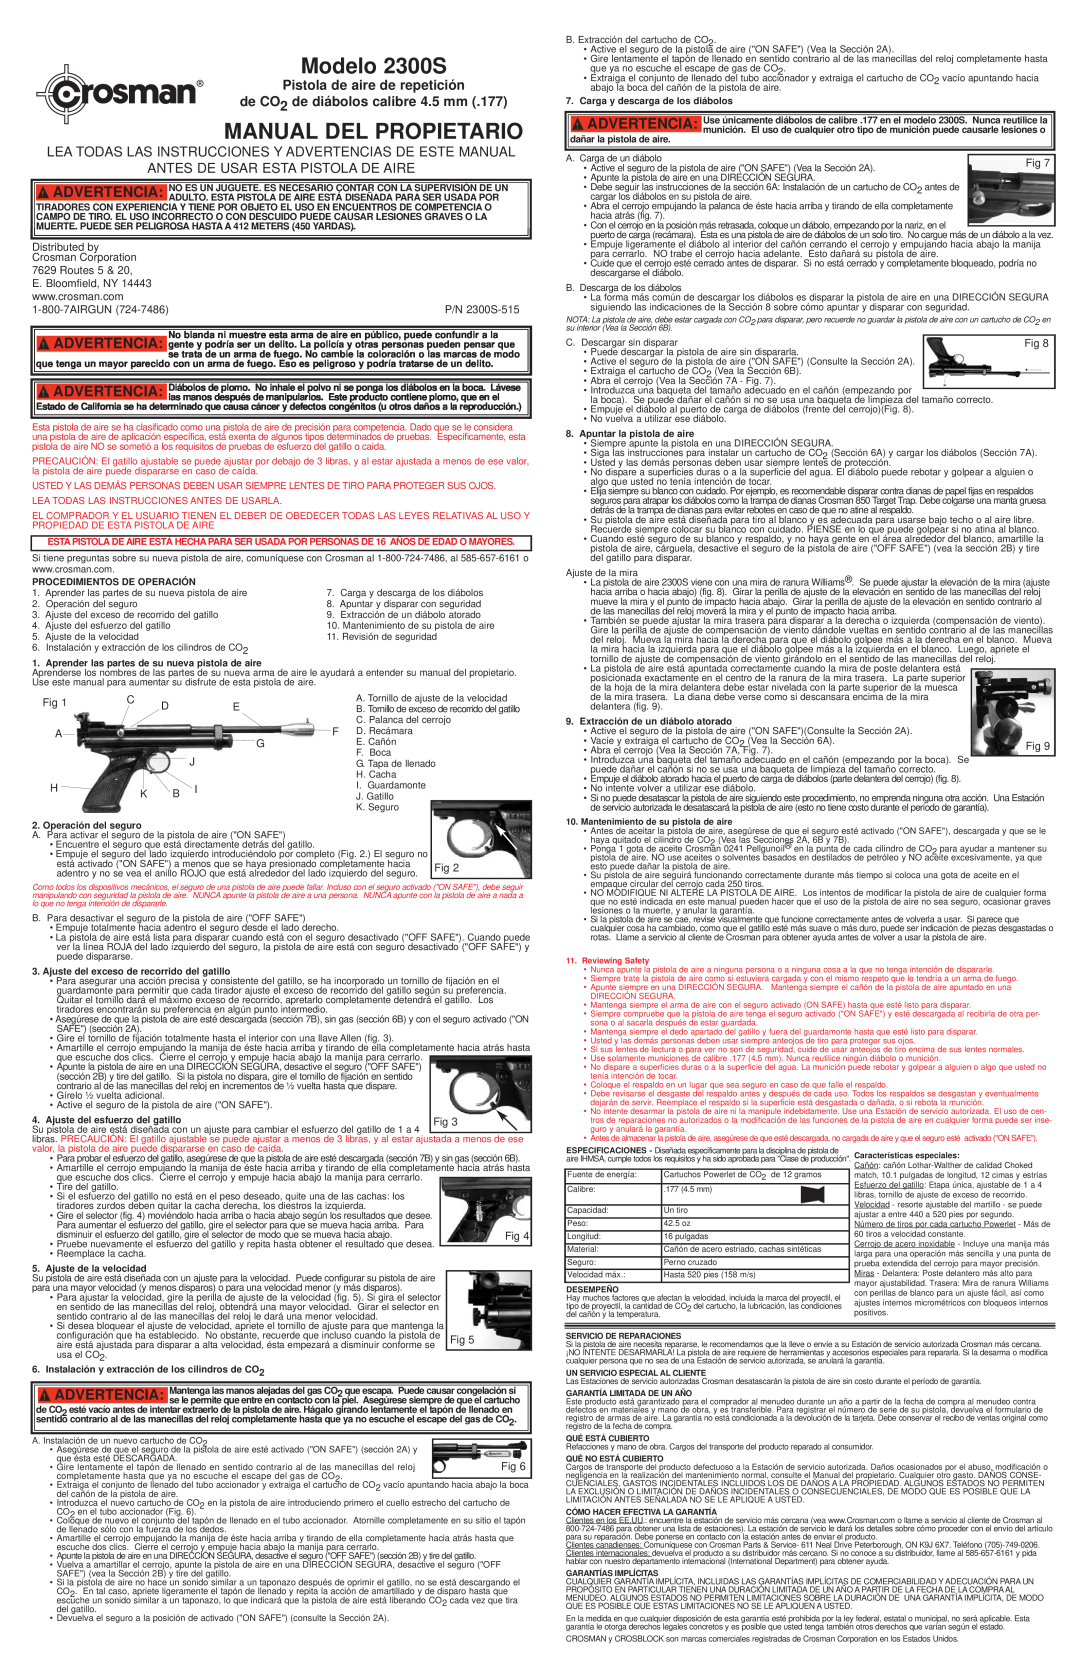 Hoover Pistola de aire de repetición de CO2 de diábolos calibre 4.5 mm, Modelo 2300S, Manual Del Propietario 